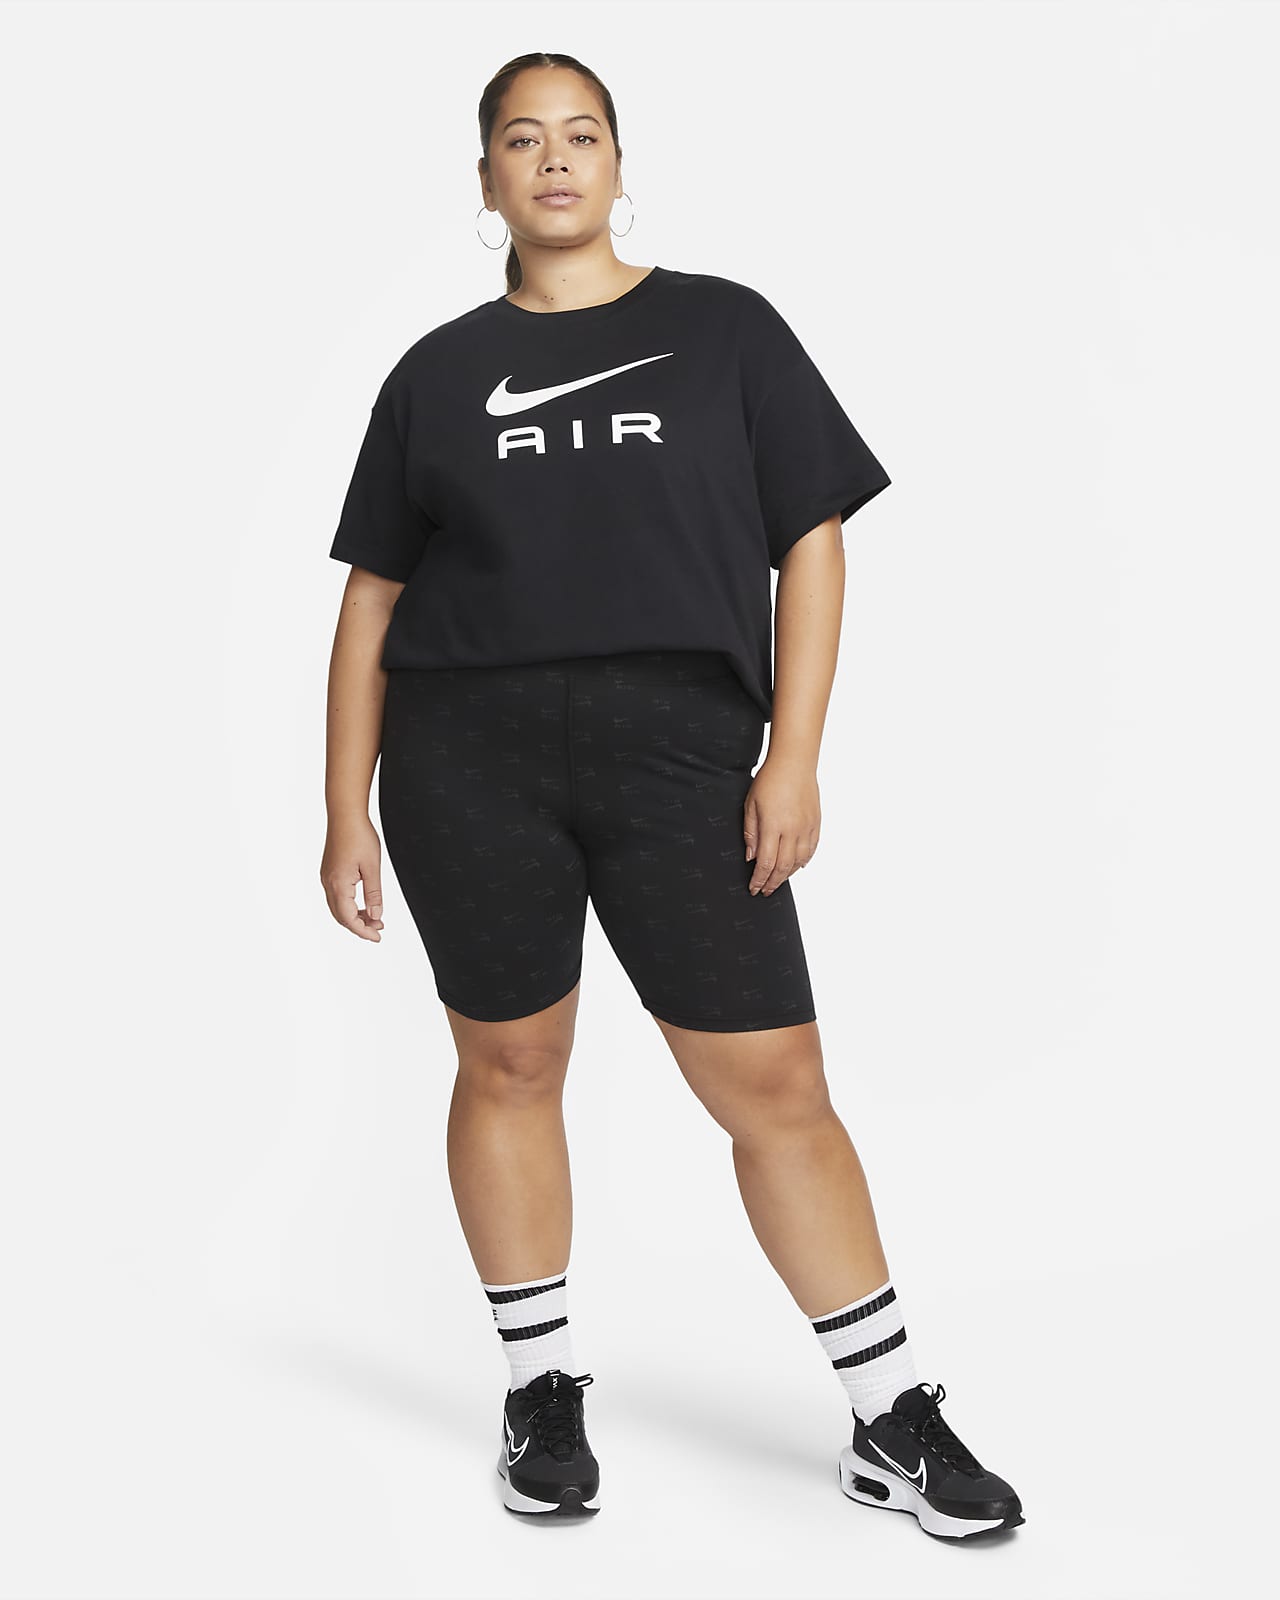 Nike Air Women's T-Shirt (Plus Size). Nike IL